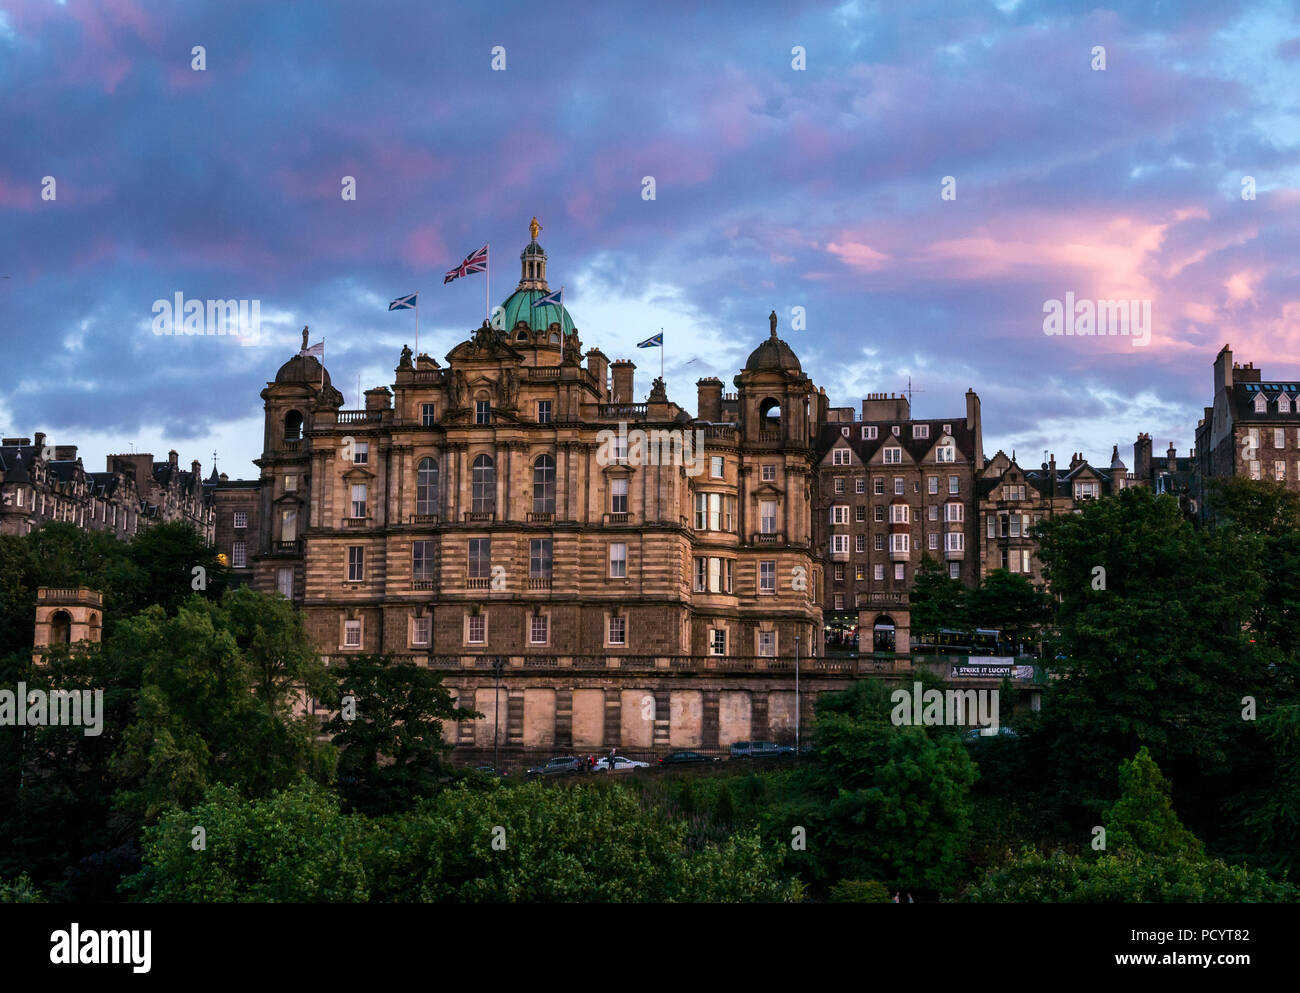 Bank of Scotland, Lloyds Banking Group, in der Dämmerung mit bunten Himmel und rosa Wolken, die Hügel, Edinburgh, Schottland, Großbritannien Stockfoto